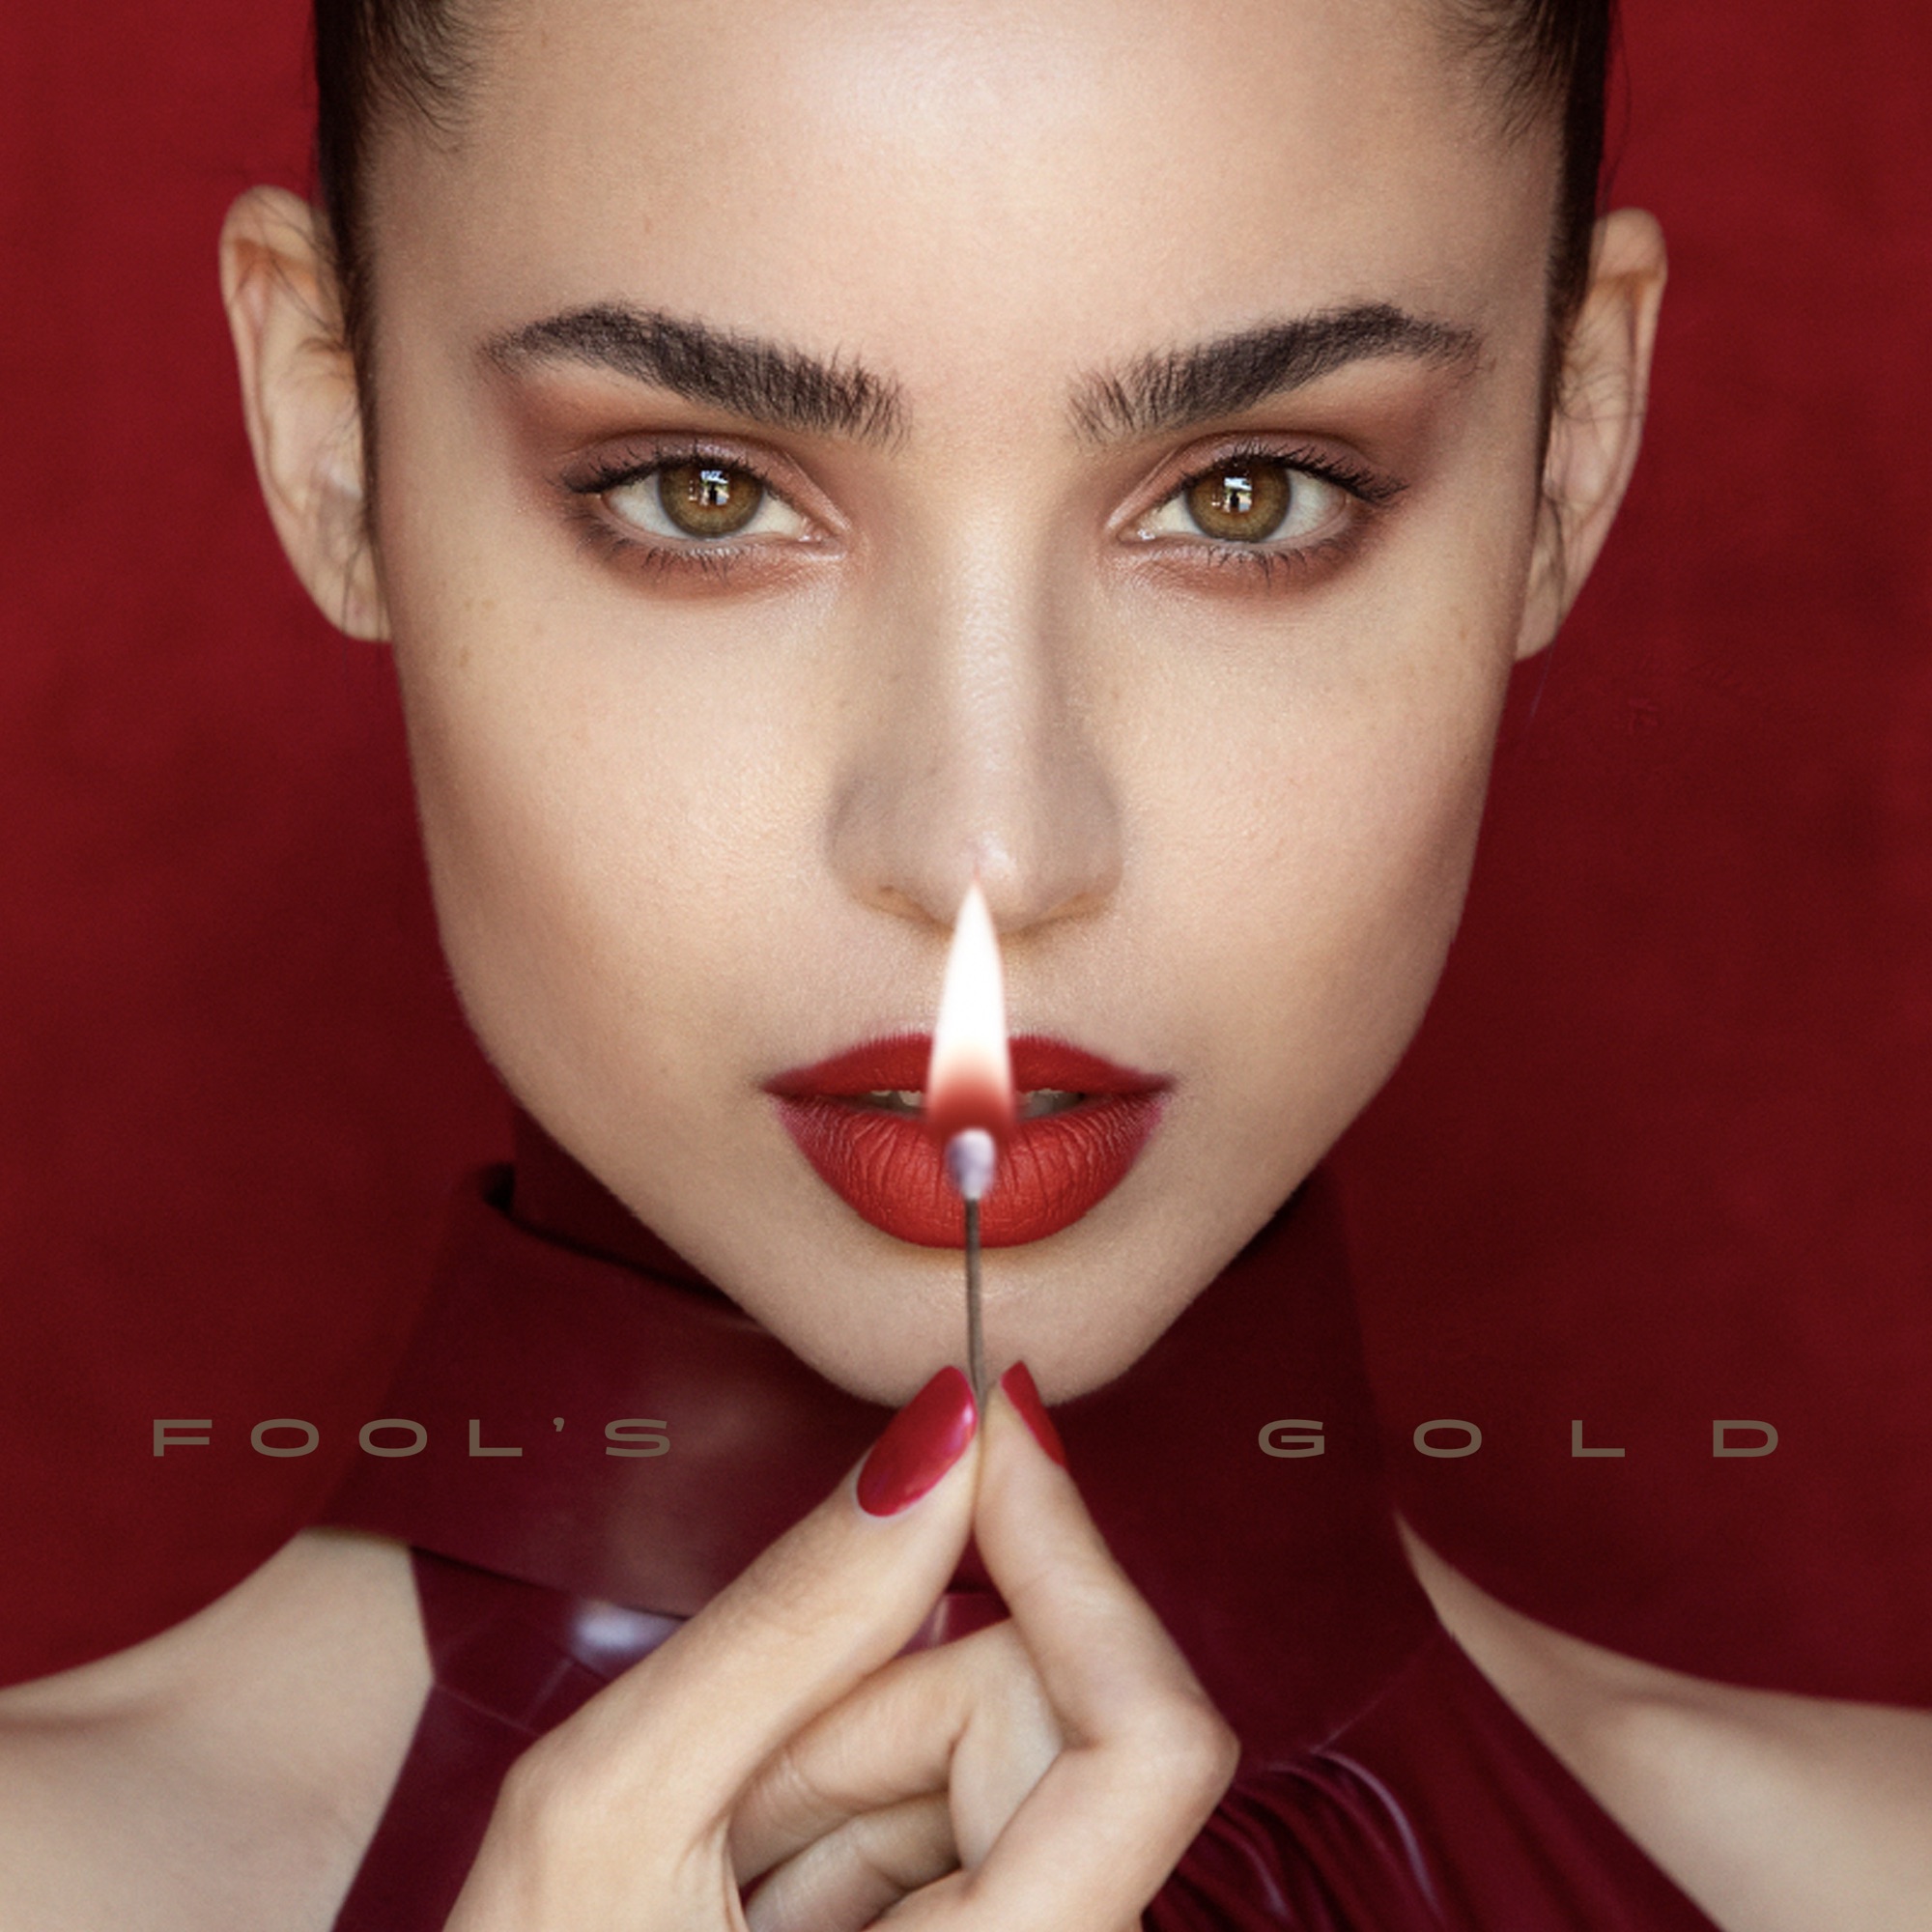 Sofia Carson - Fool's Gold - Single